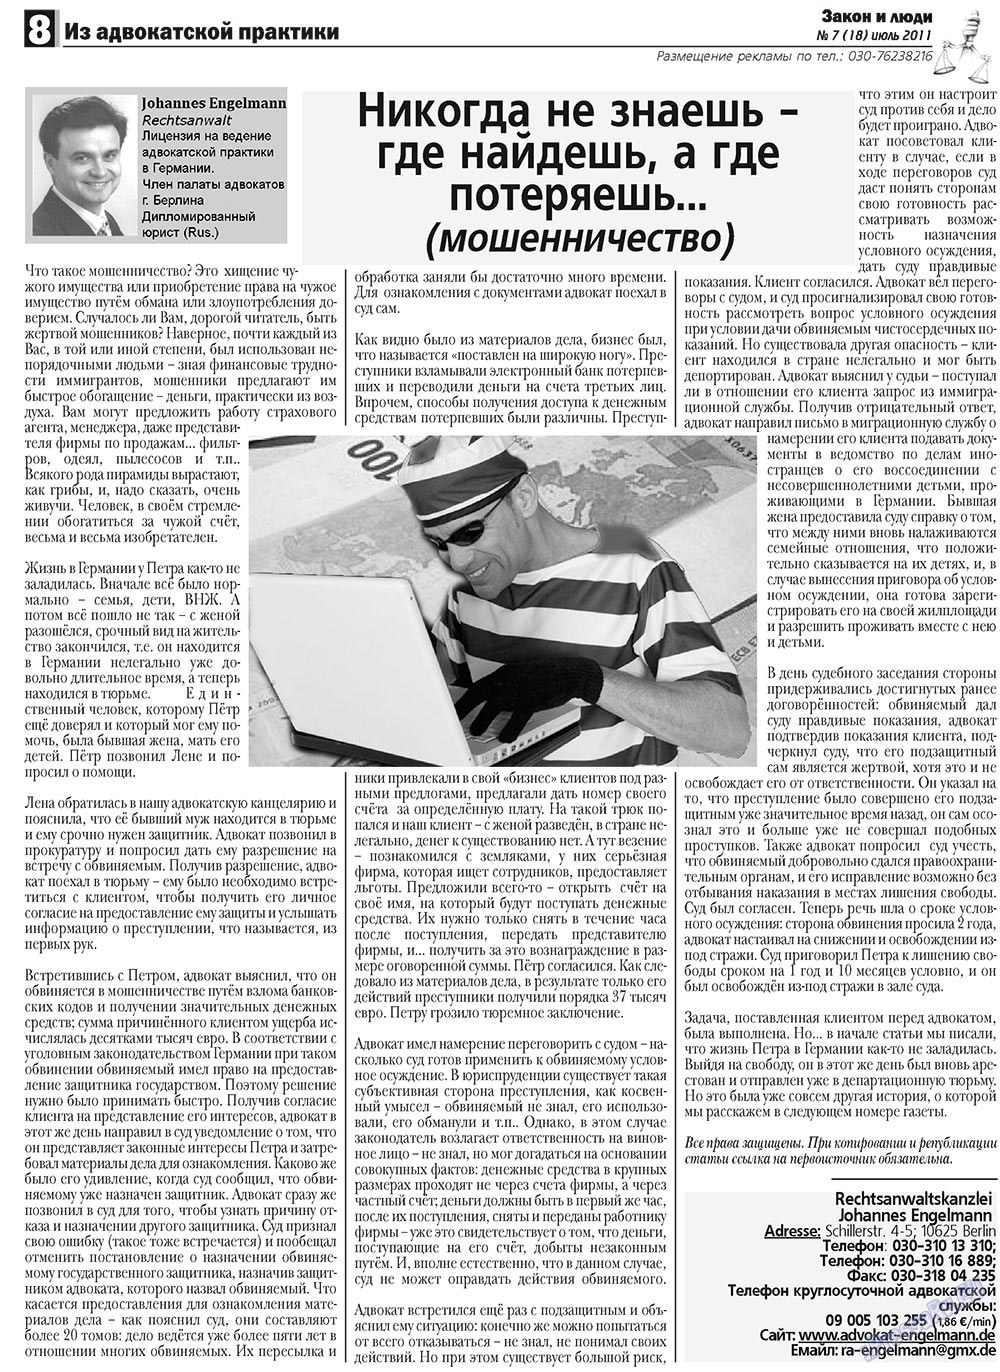 Закон и люди, газета. 2011 №7 стр.8